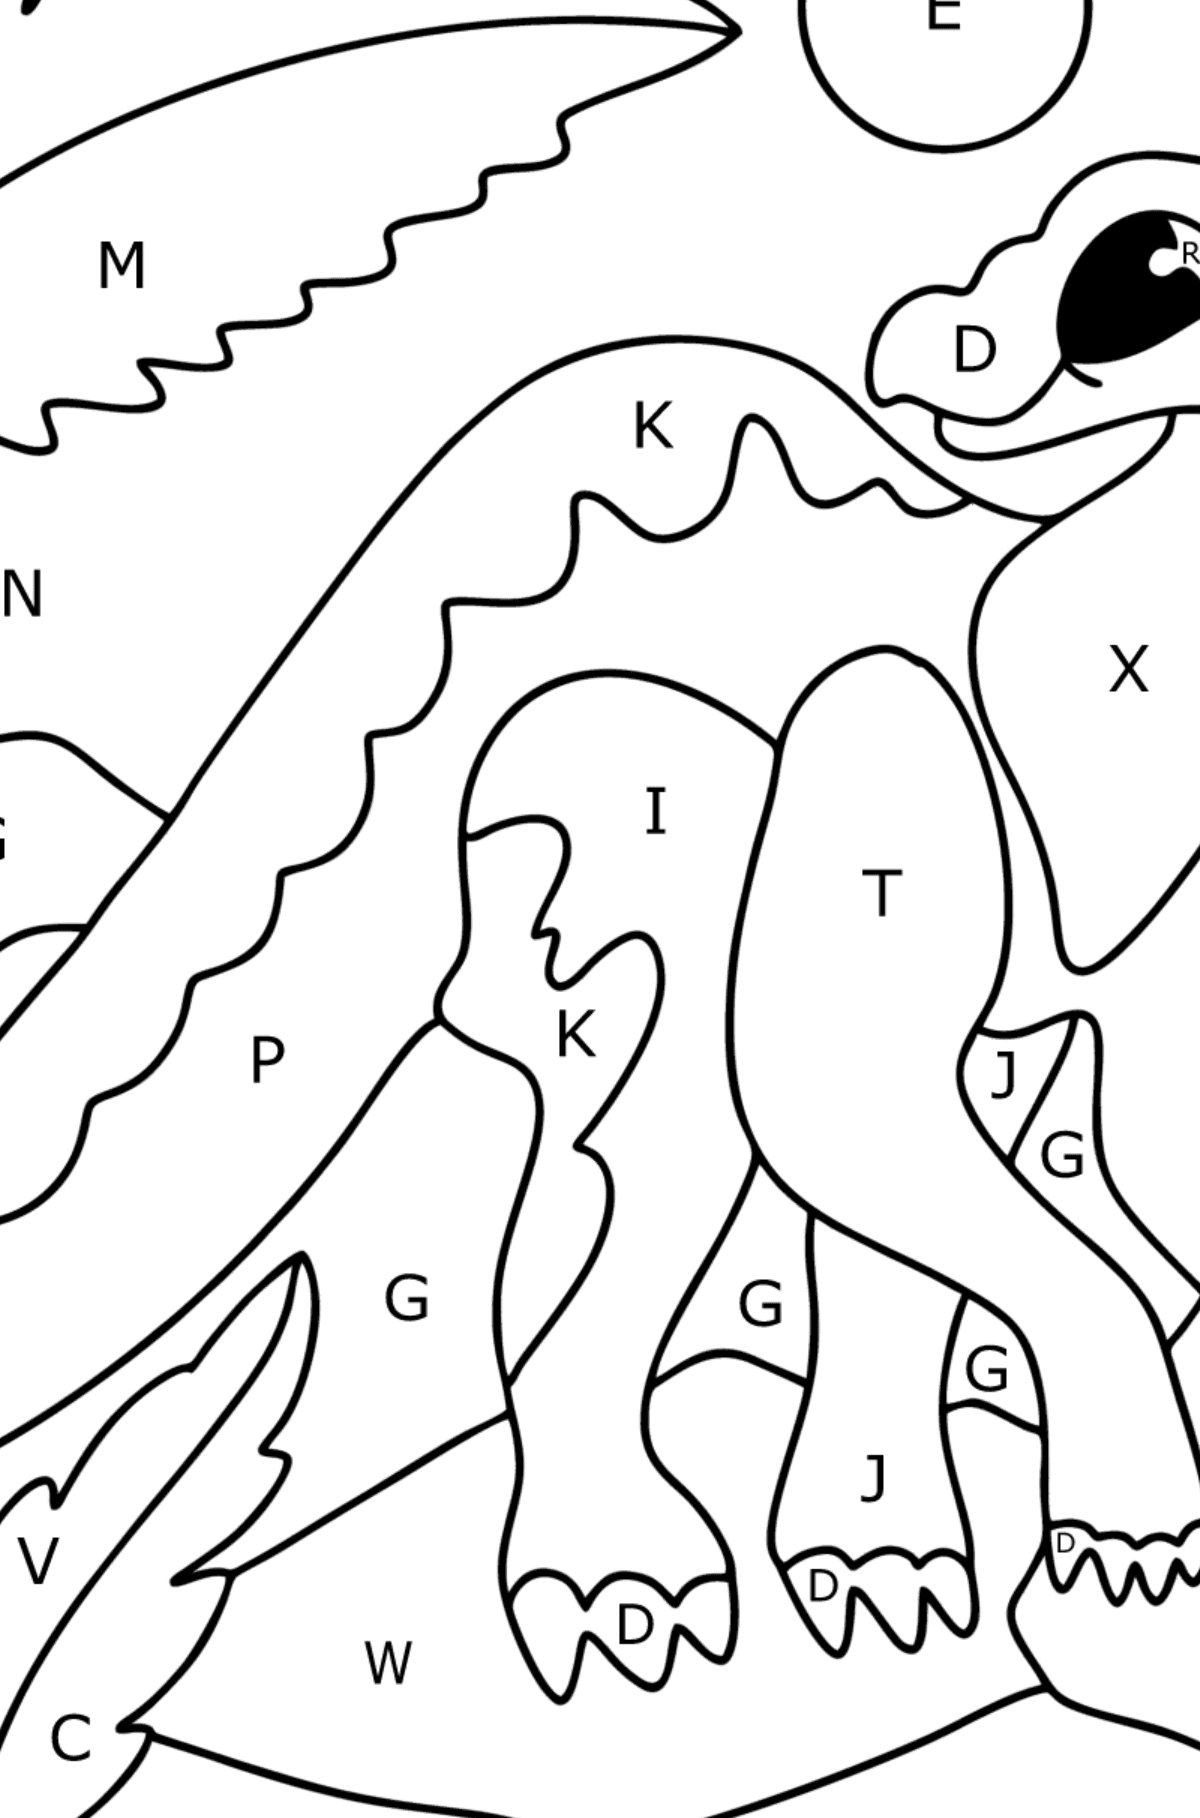 Dibujo de Iguanodonte para colorear - Colorear por Letras para Niños